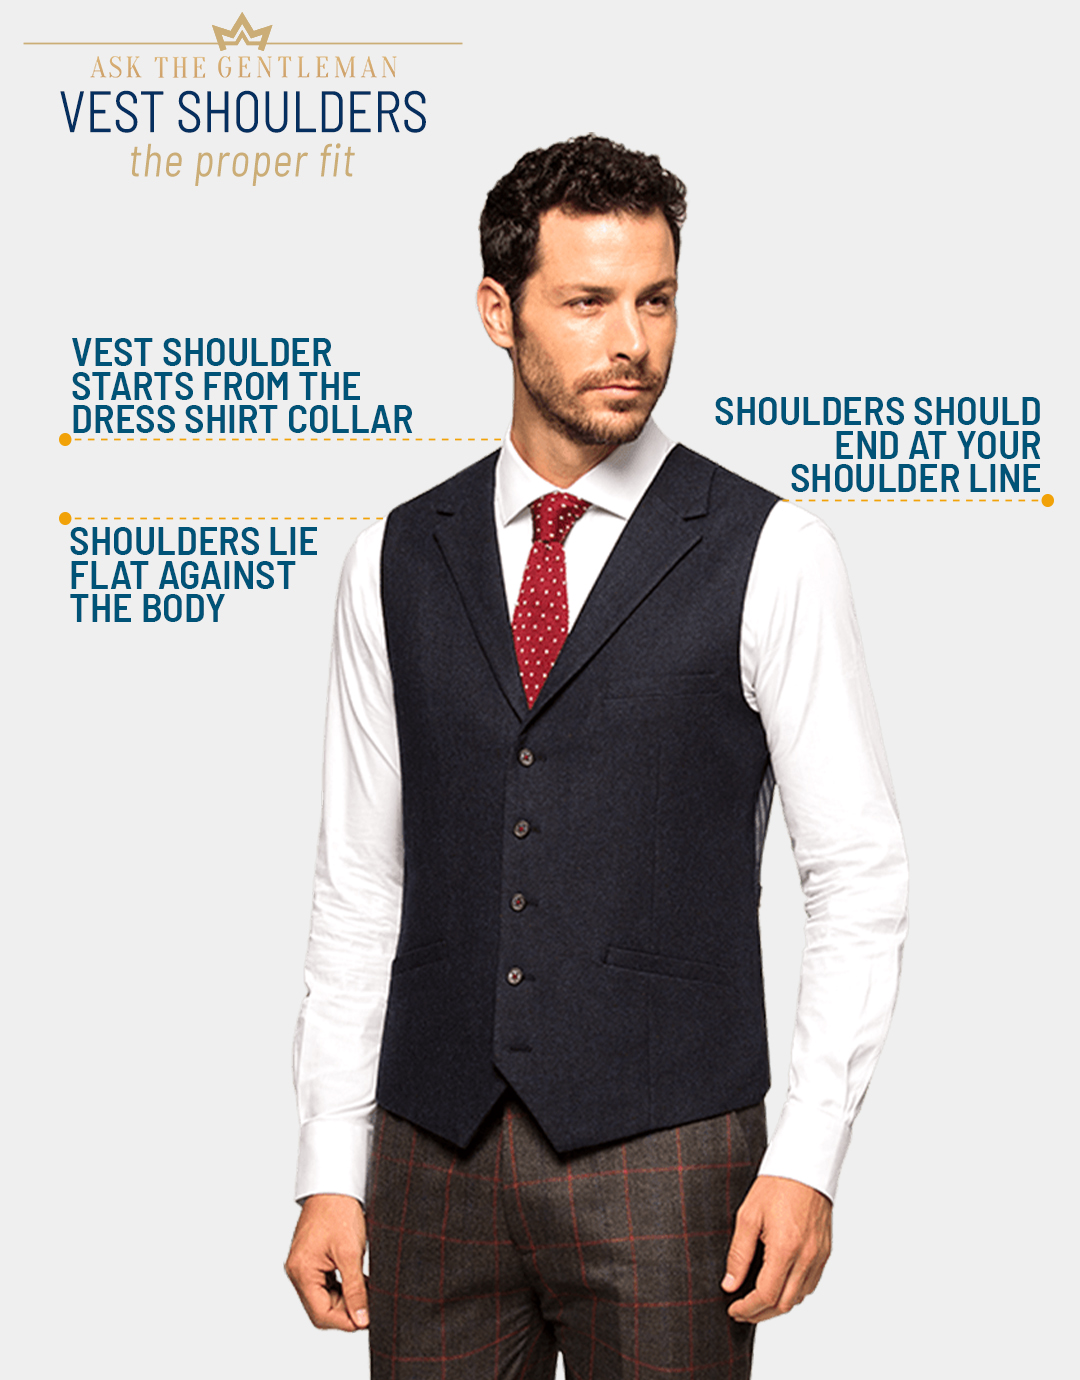 Suit vest shoulder lie flat against your body